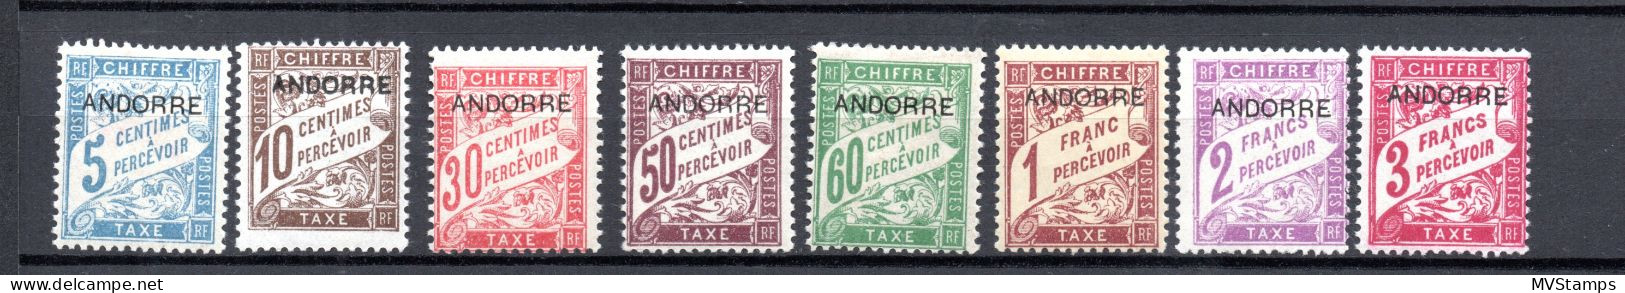 Andorra 1931 Set Overprinted Postage-due Stamps (Michel P 1/8) Nice MLH - Ongebruikt